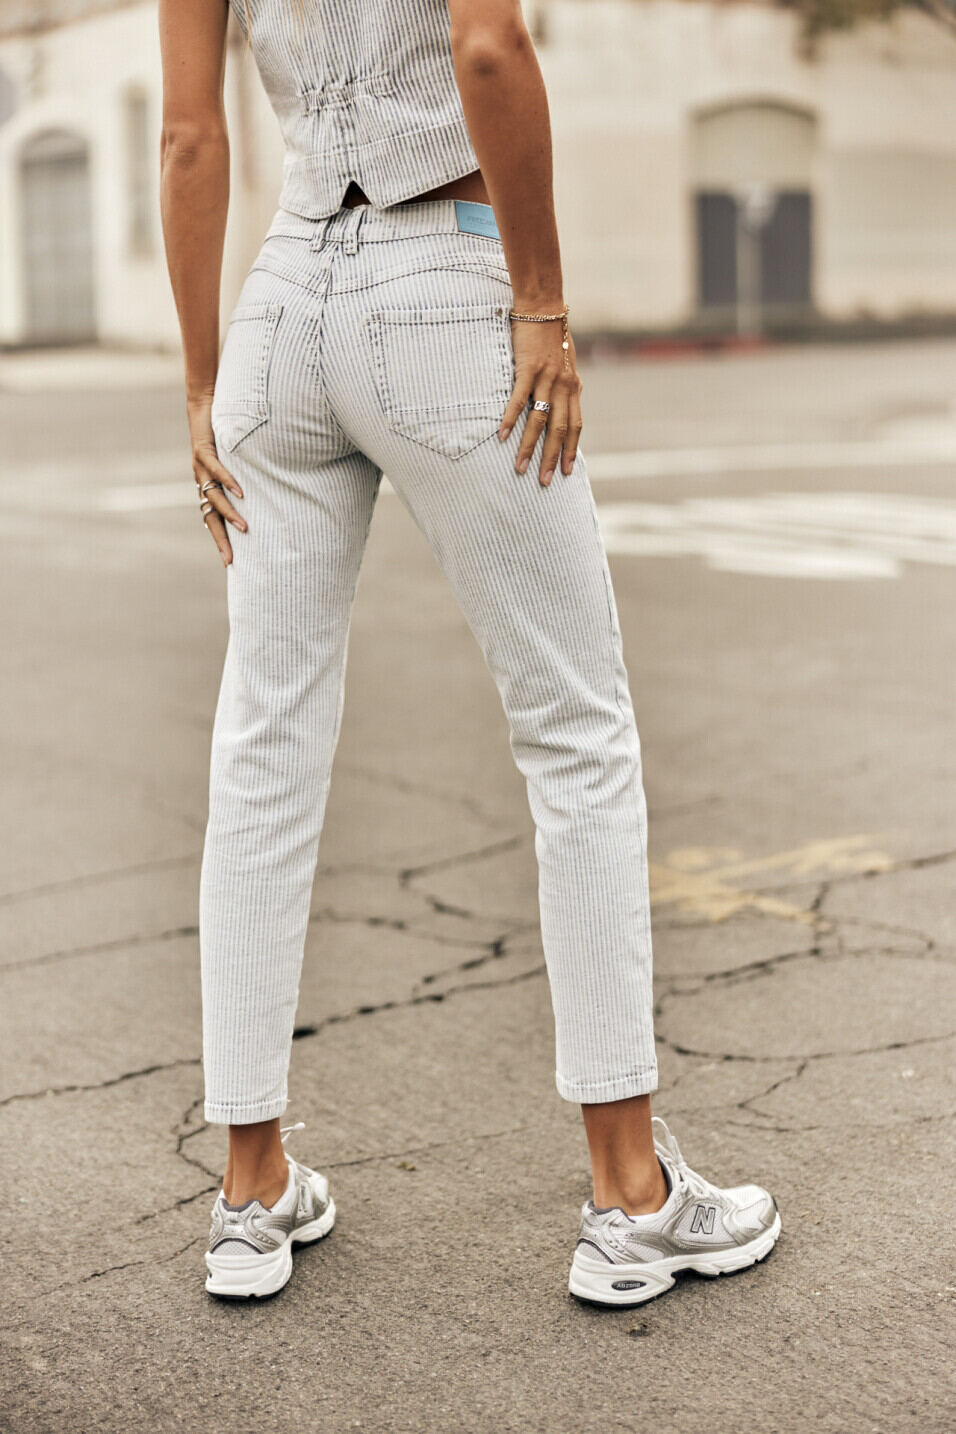 Cropped Jeans Woman Sophy Bossanova | Freeman T. Porter